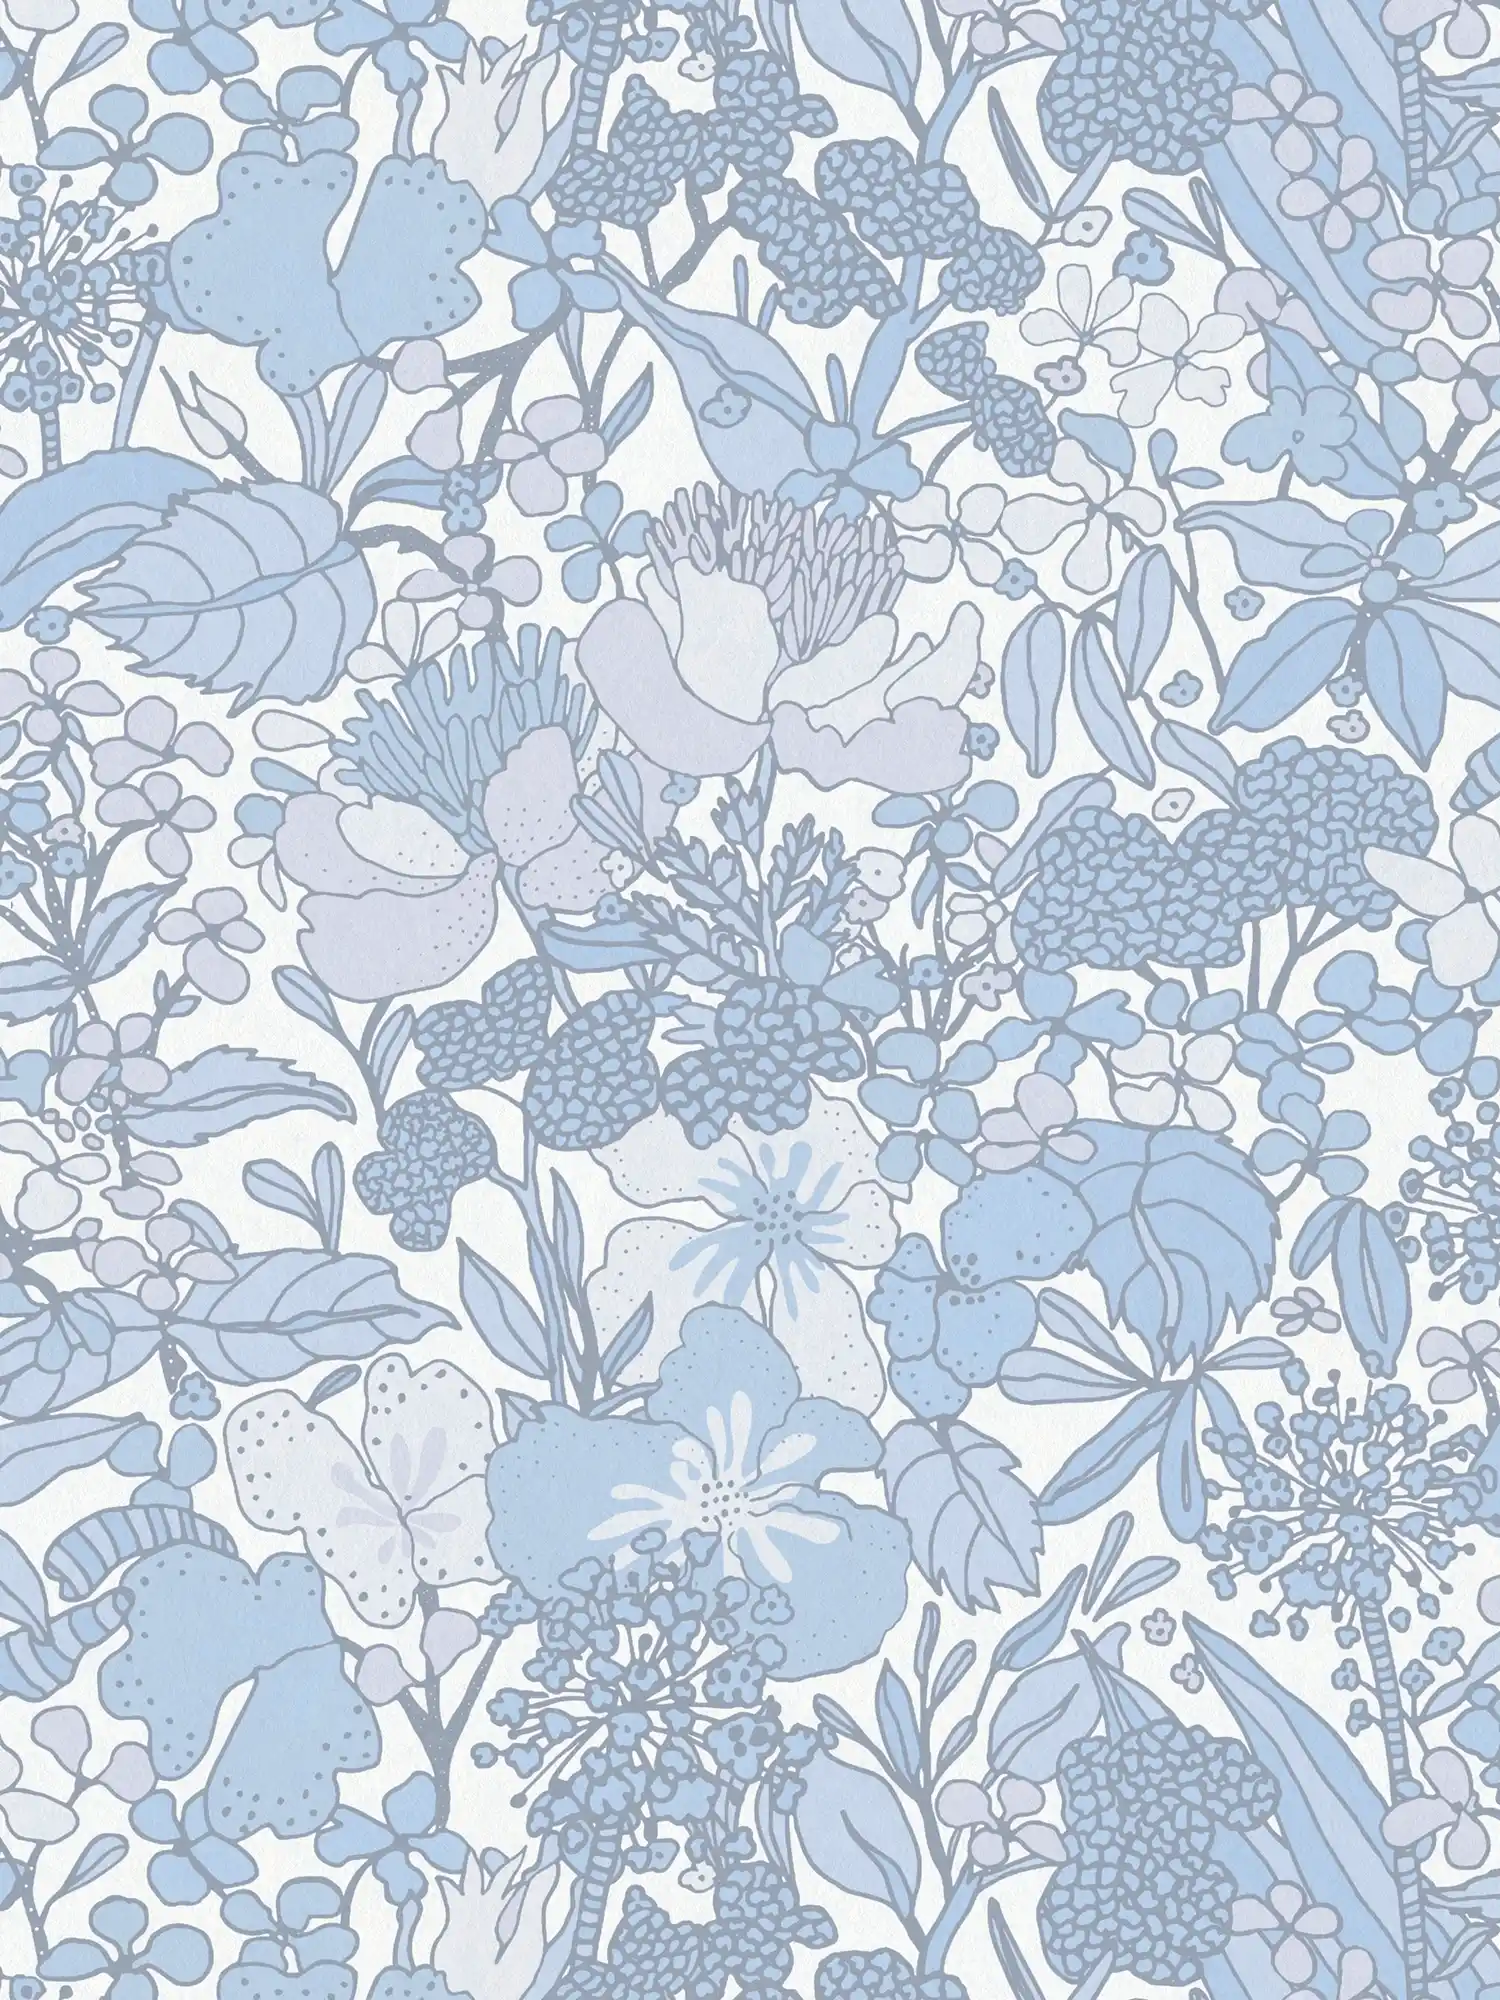 Behang Blauw & Wit met 70s Retro Bloemenpatroon - Grijs, Blauw, Wit
